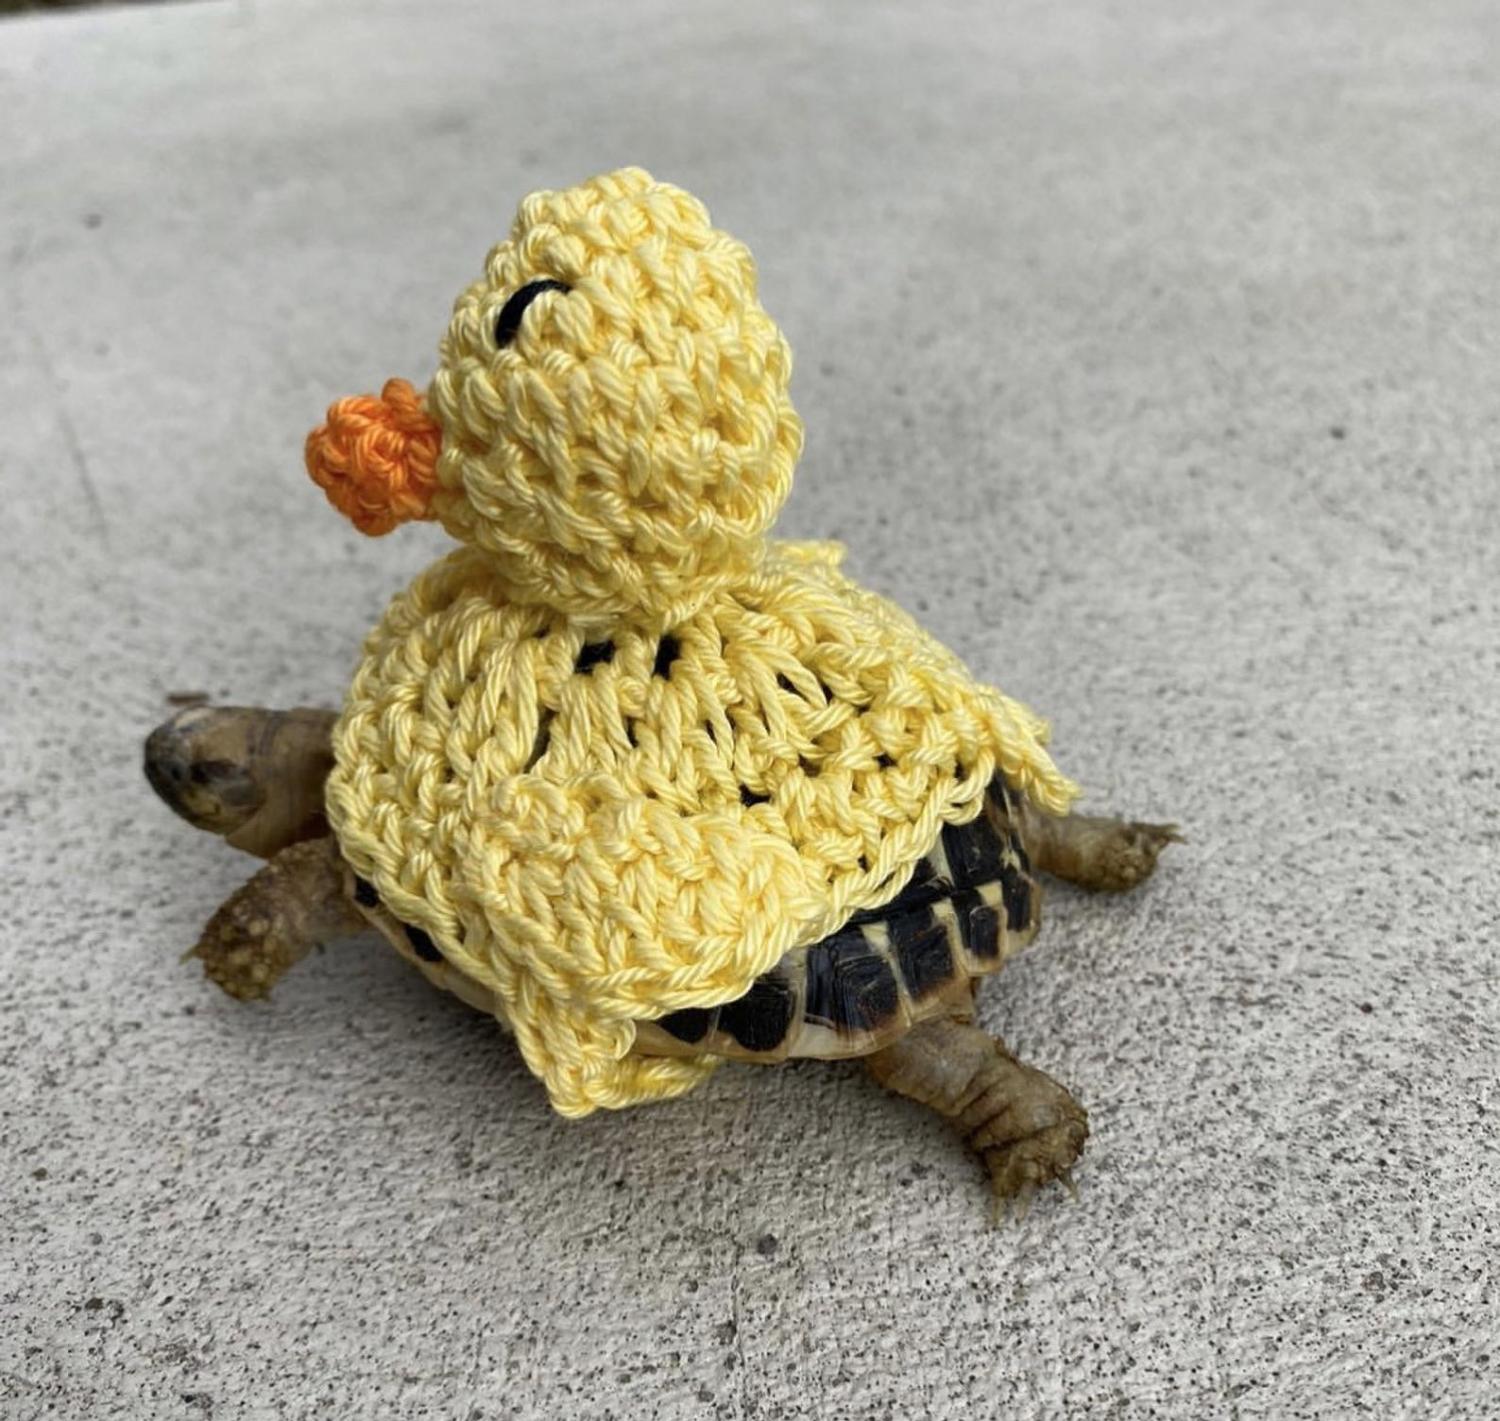 Crochet Turtle Sweater - Ducky tortoise cozy